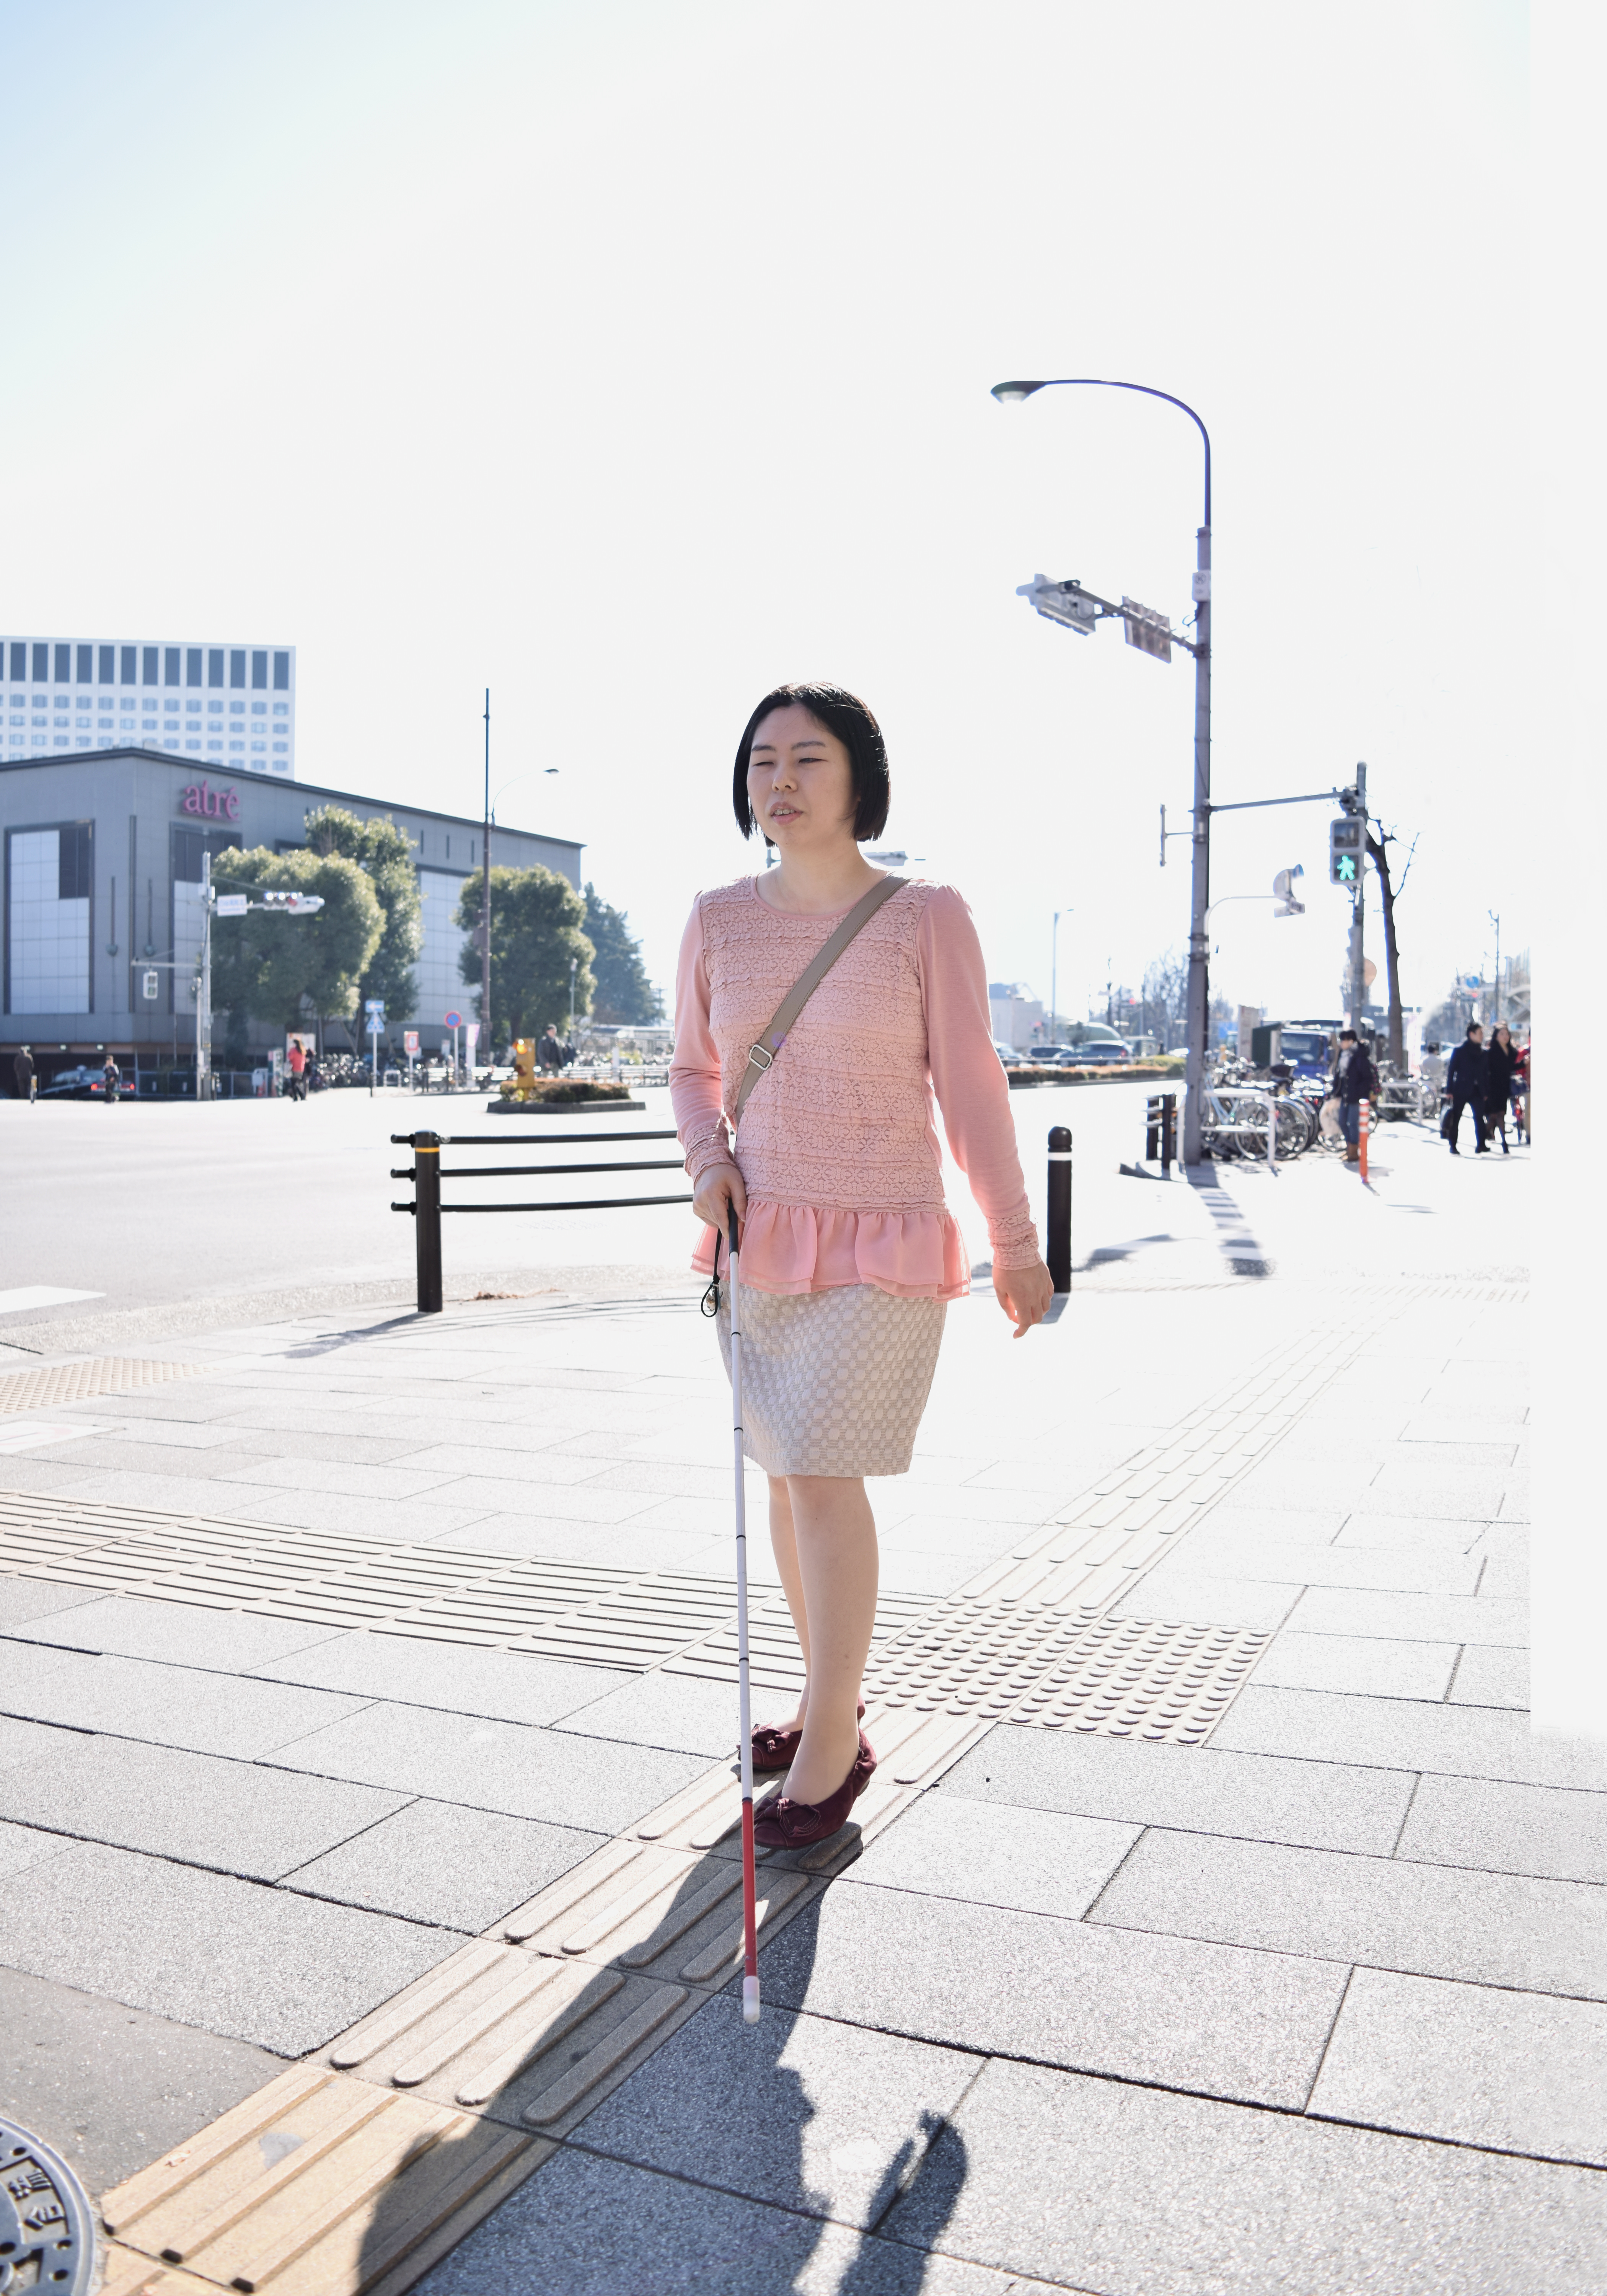 【移動】白杖をもって颯爽と街を歩く若い女性。訓練を受けることで、安全、かつ自由に移動することができます。